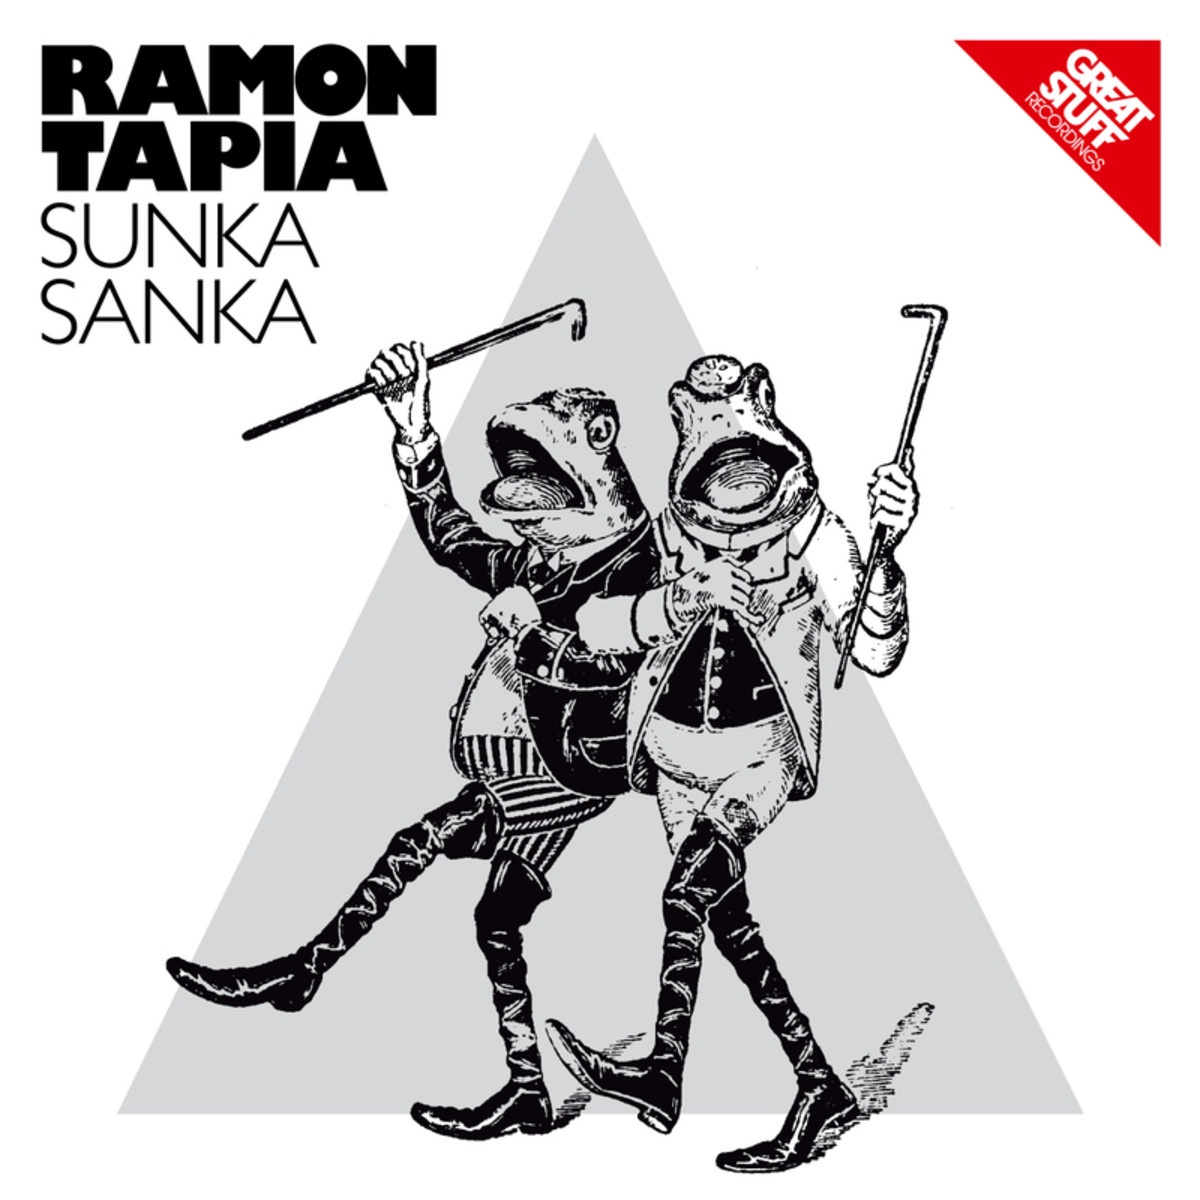 Sunka Sanka - Original Mix